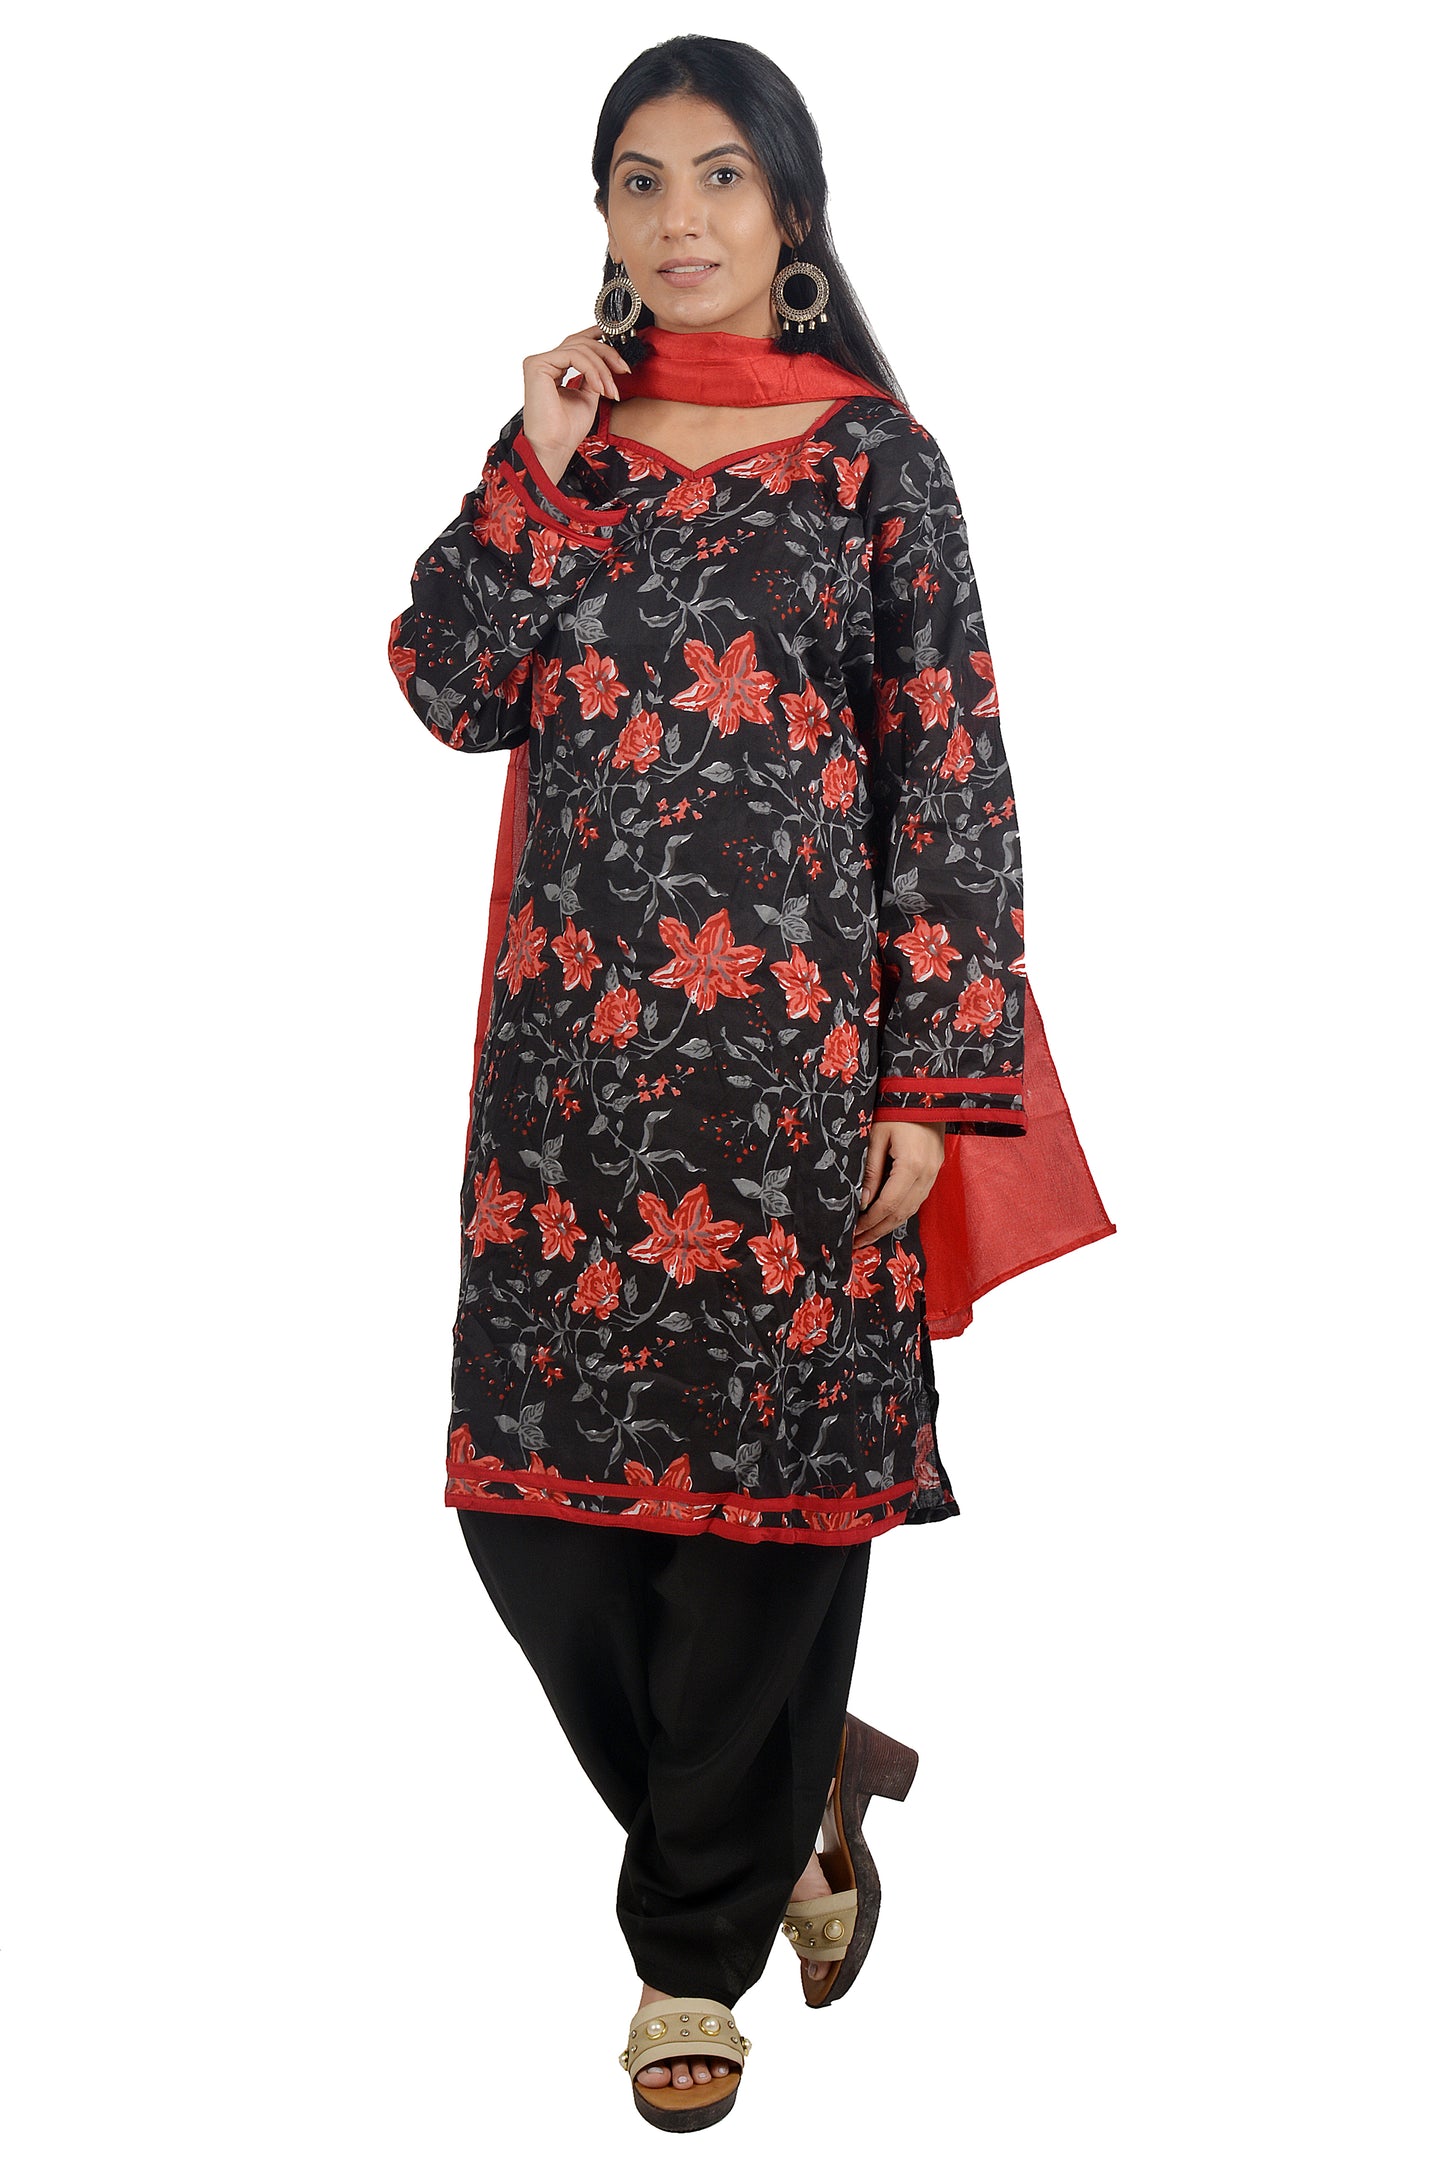 Black  Red Cotton  Floral print  Dress Salwar kameez  Plus chest  Size 50